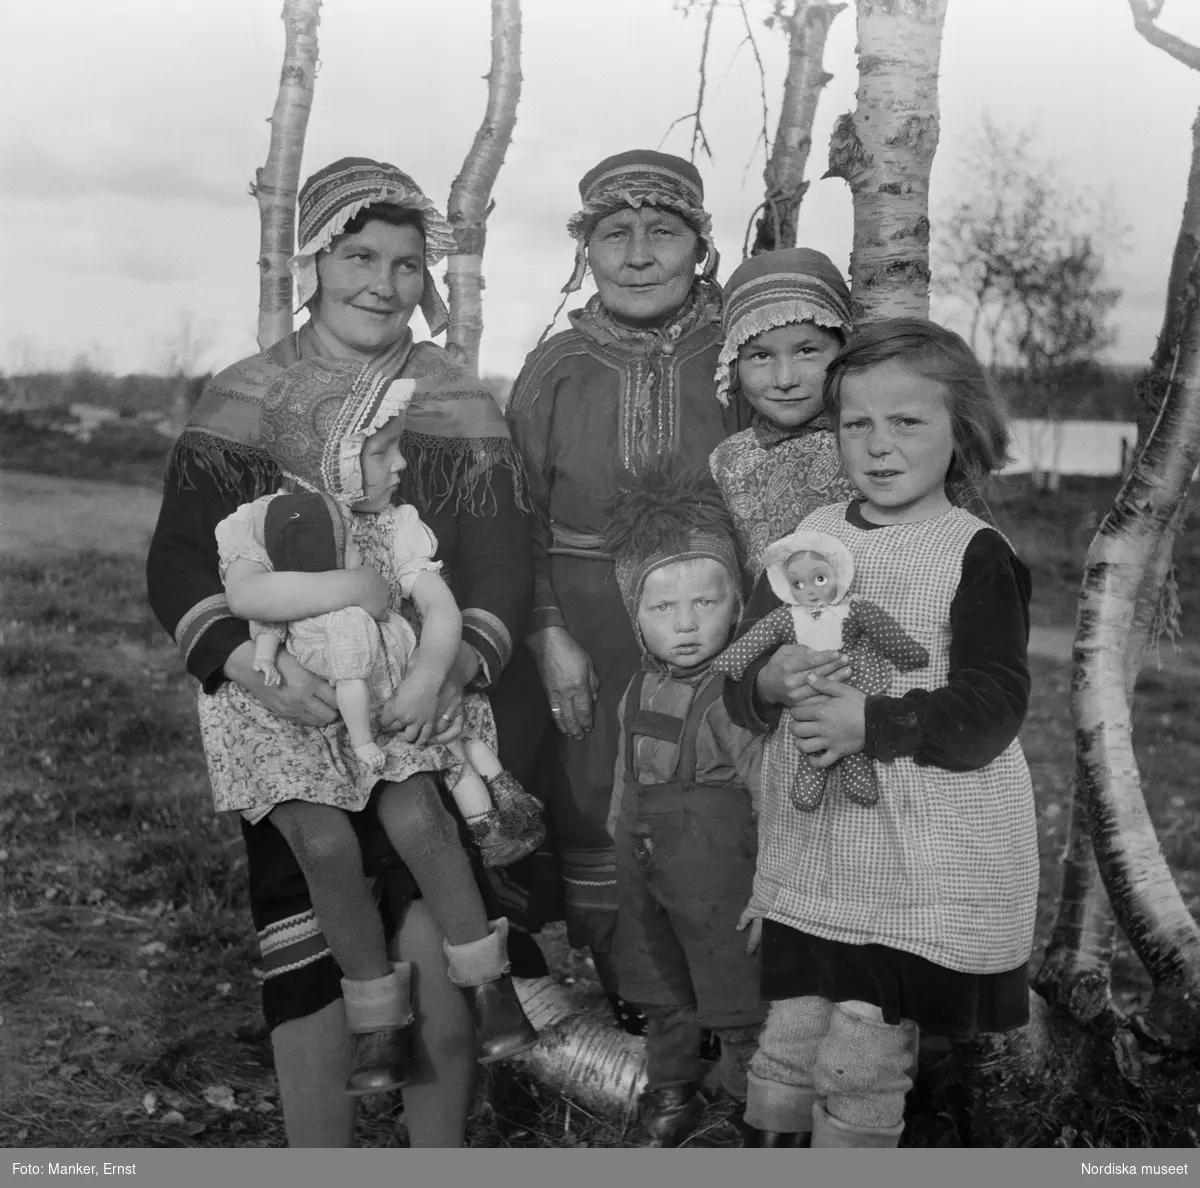 Porträtt av tre generationer samiska kvinnor och barn. Flickorna med dockor i famnen. Britta Prost (född Sevä 1912) med dottern Elin Ragnhild (född 1944), svärmor/faster Susanna Prost (född Sevä) och brorsbarnen Ellen Margareta och Karl Erling. Från Nordiska museets Lappmarksundersökning.